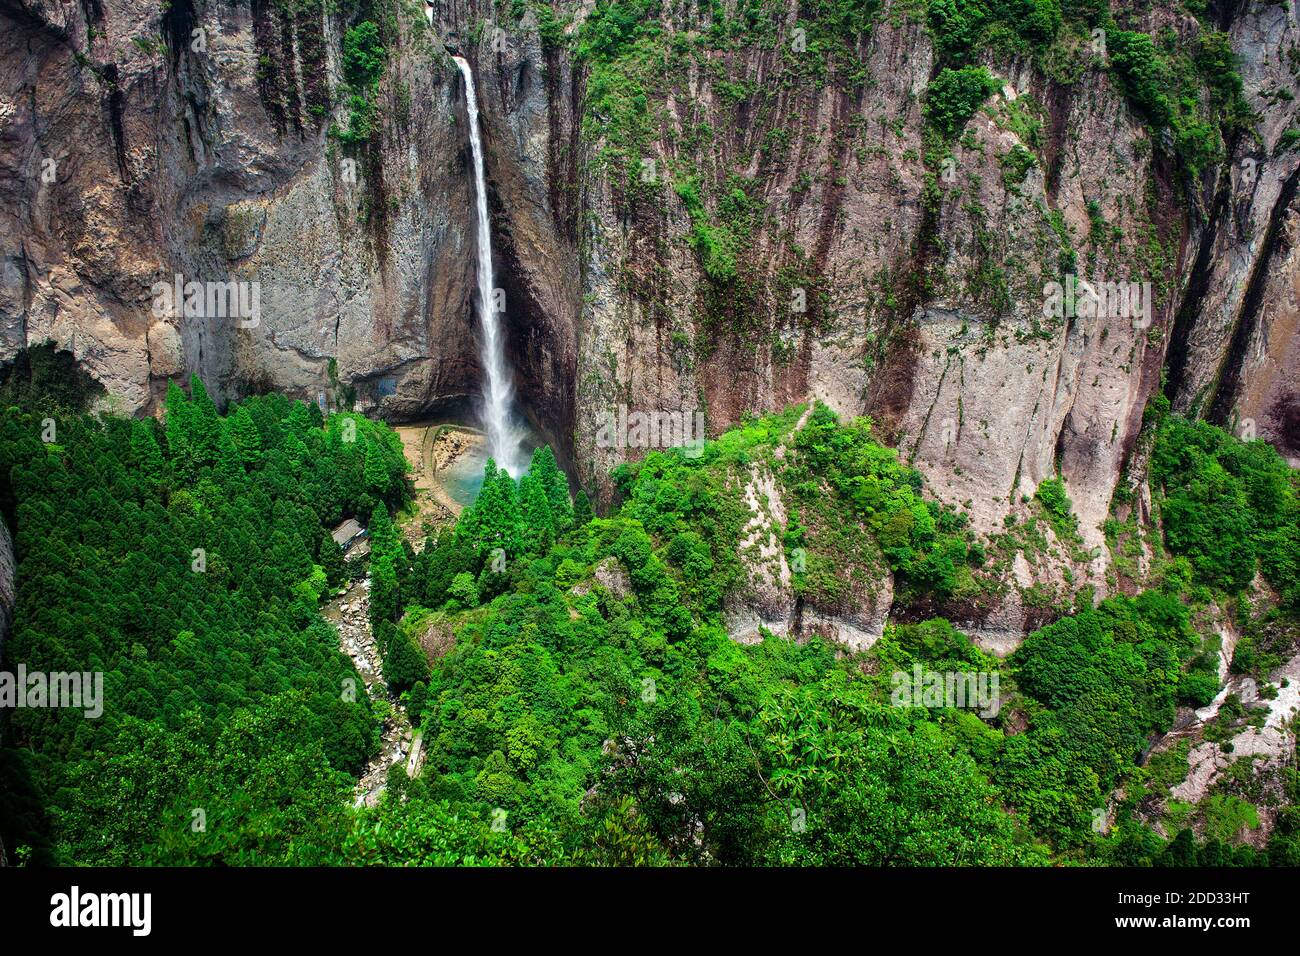 Yandang mountain dragon qiushui waterfall Stock Photo